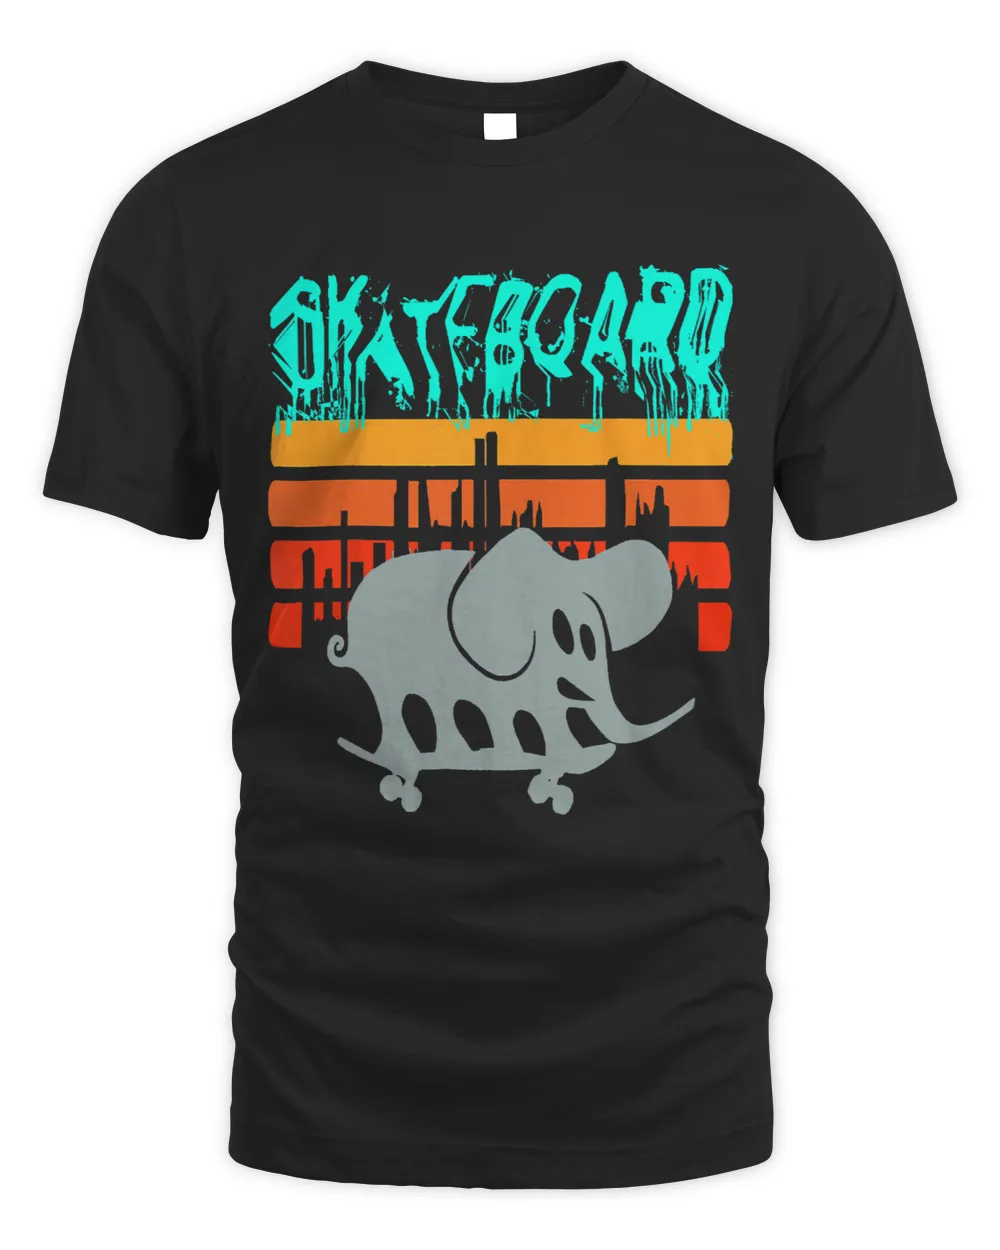 Skater Elephant Vintage Sunset Cities Skateboard For Men